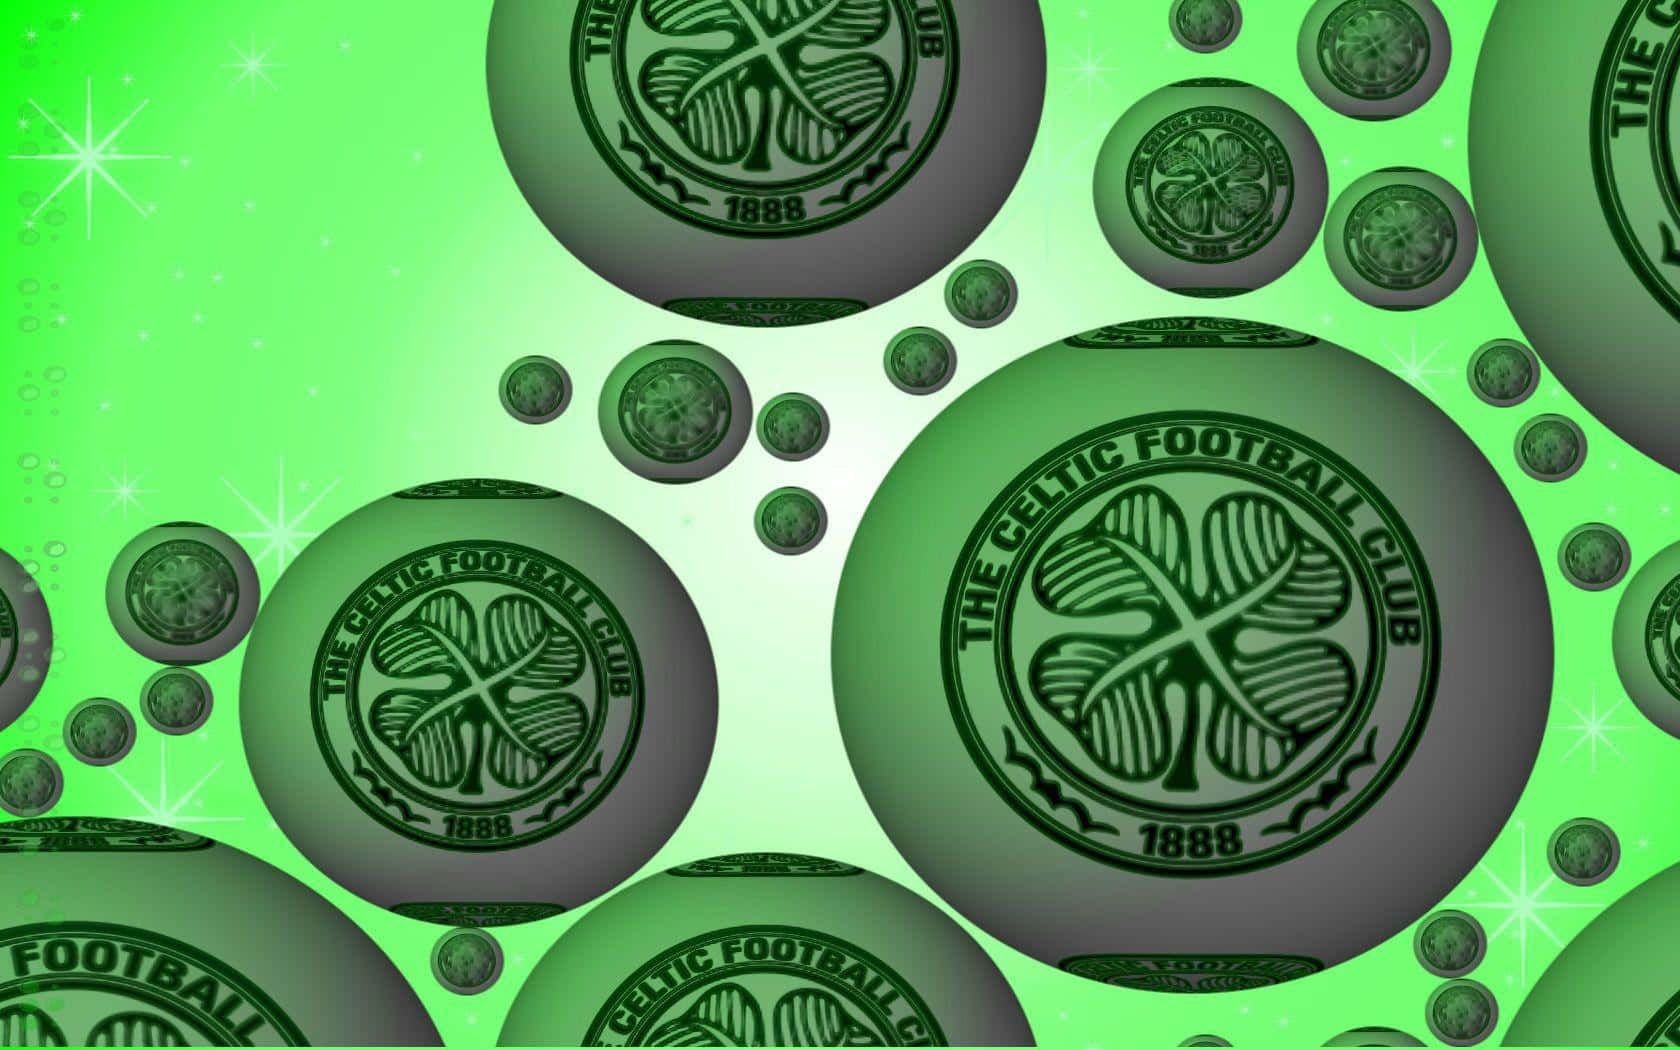 "Celebrating Celtic Pride"